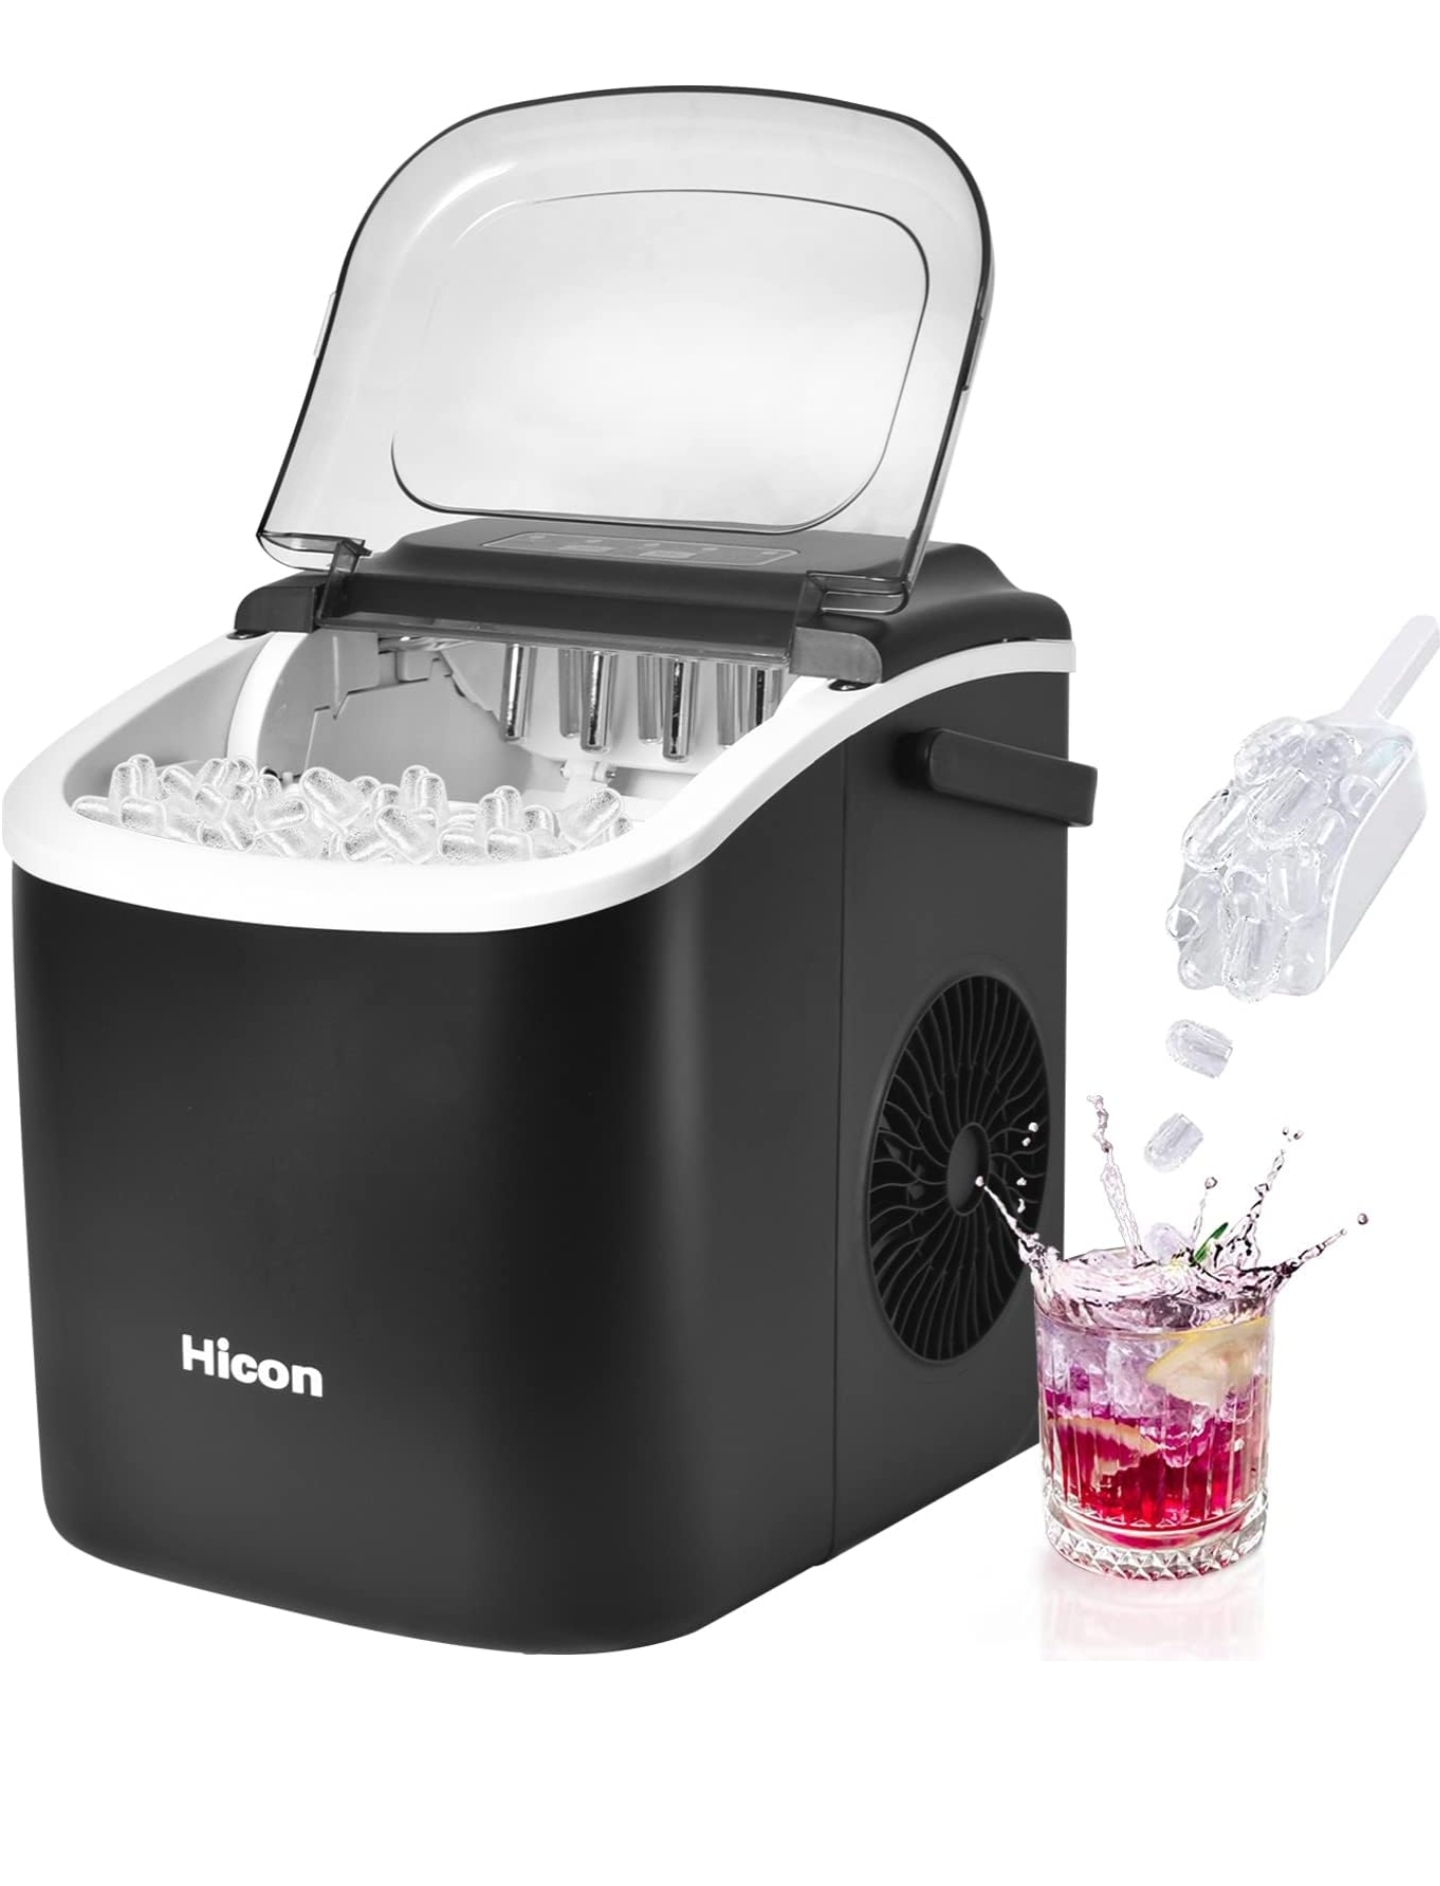 دستگاه یخ ساز HICON یخ ساز گلوله ای 33 پوندی در 24 ساعت، با دسته و عملکرد تمیز کردن خودکار، میز با قاشق یخ برای آشپزخانه خانه، کافه ها، قهوه فروشی ها